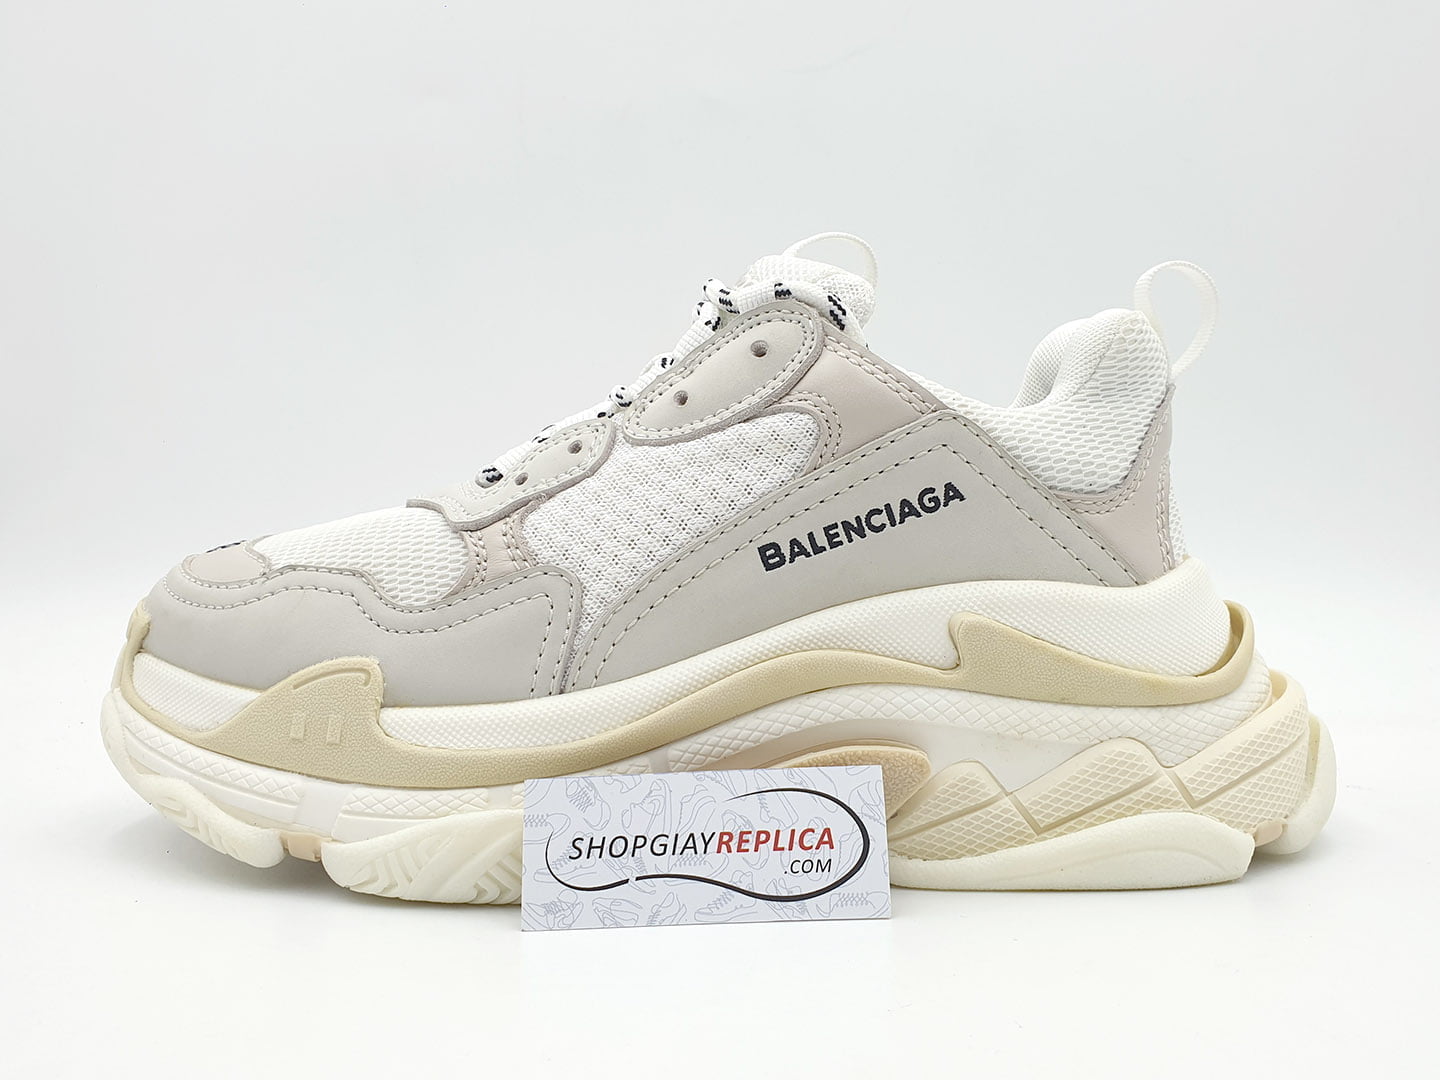 Giày Balenciaga Triple S White rep 1:1 (đế bẩn) - Shop giày Replica™